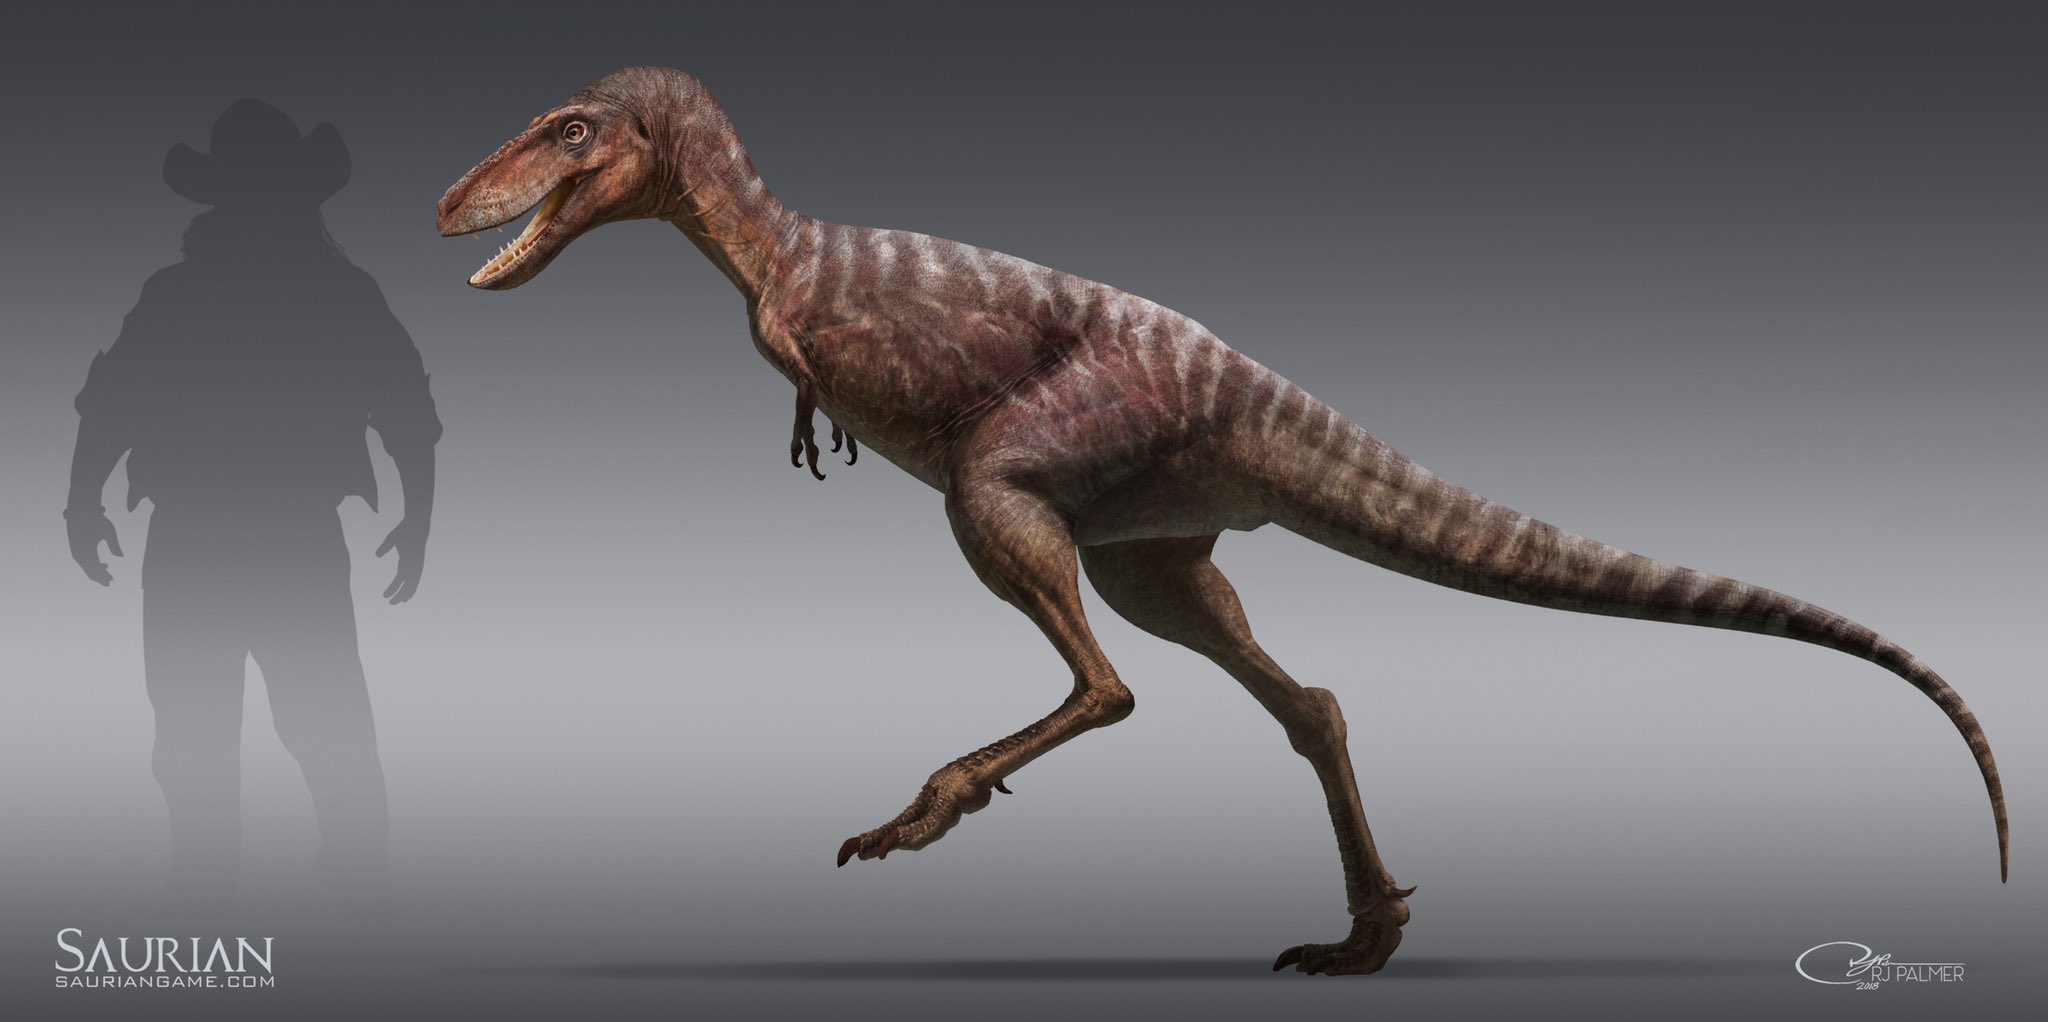 Saurian – Dinosauria Blog